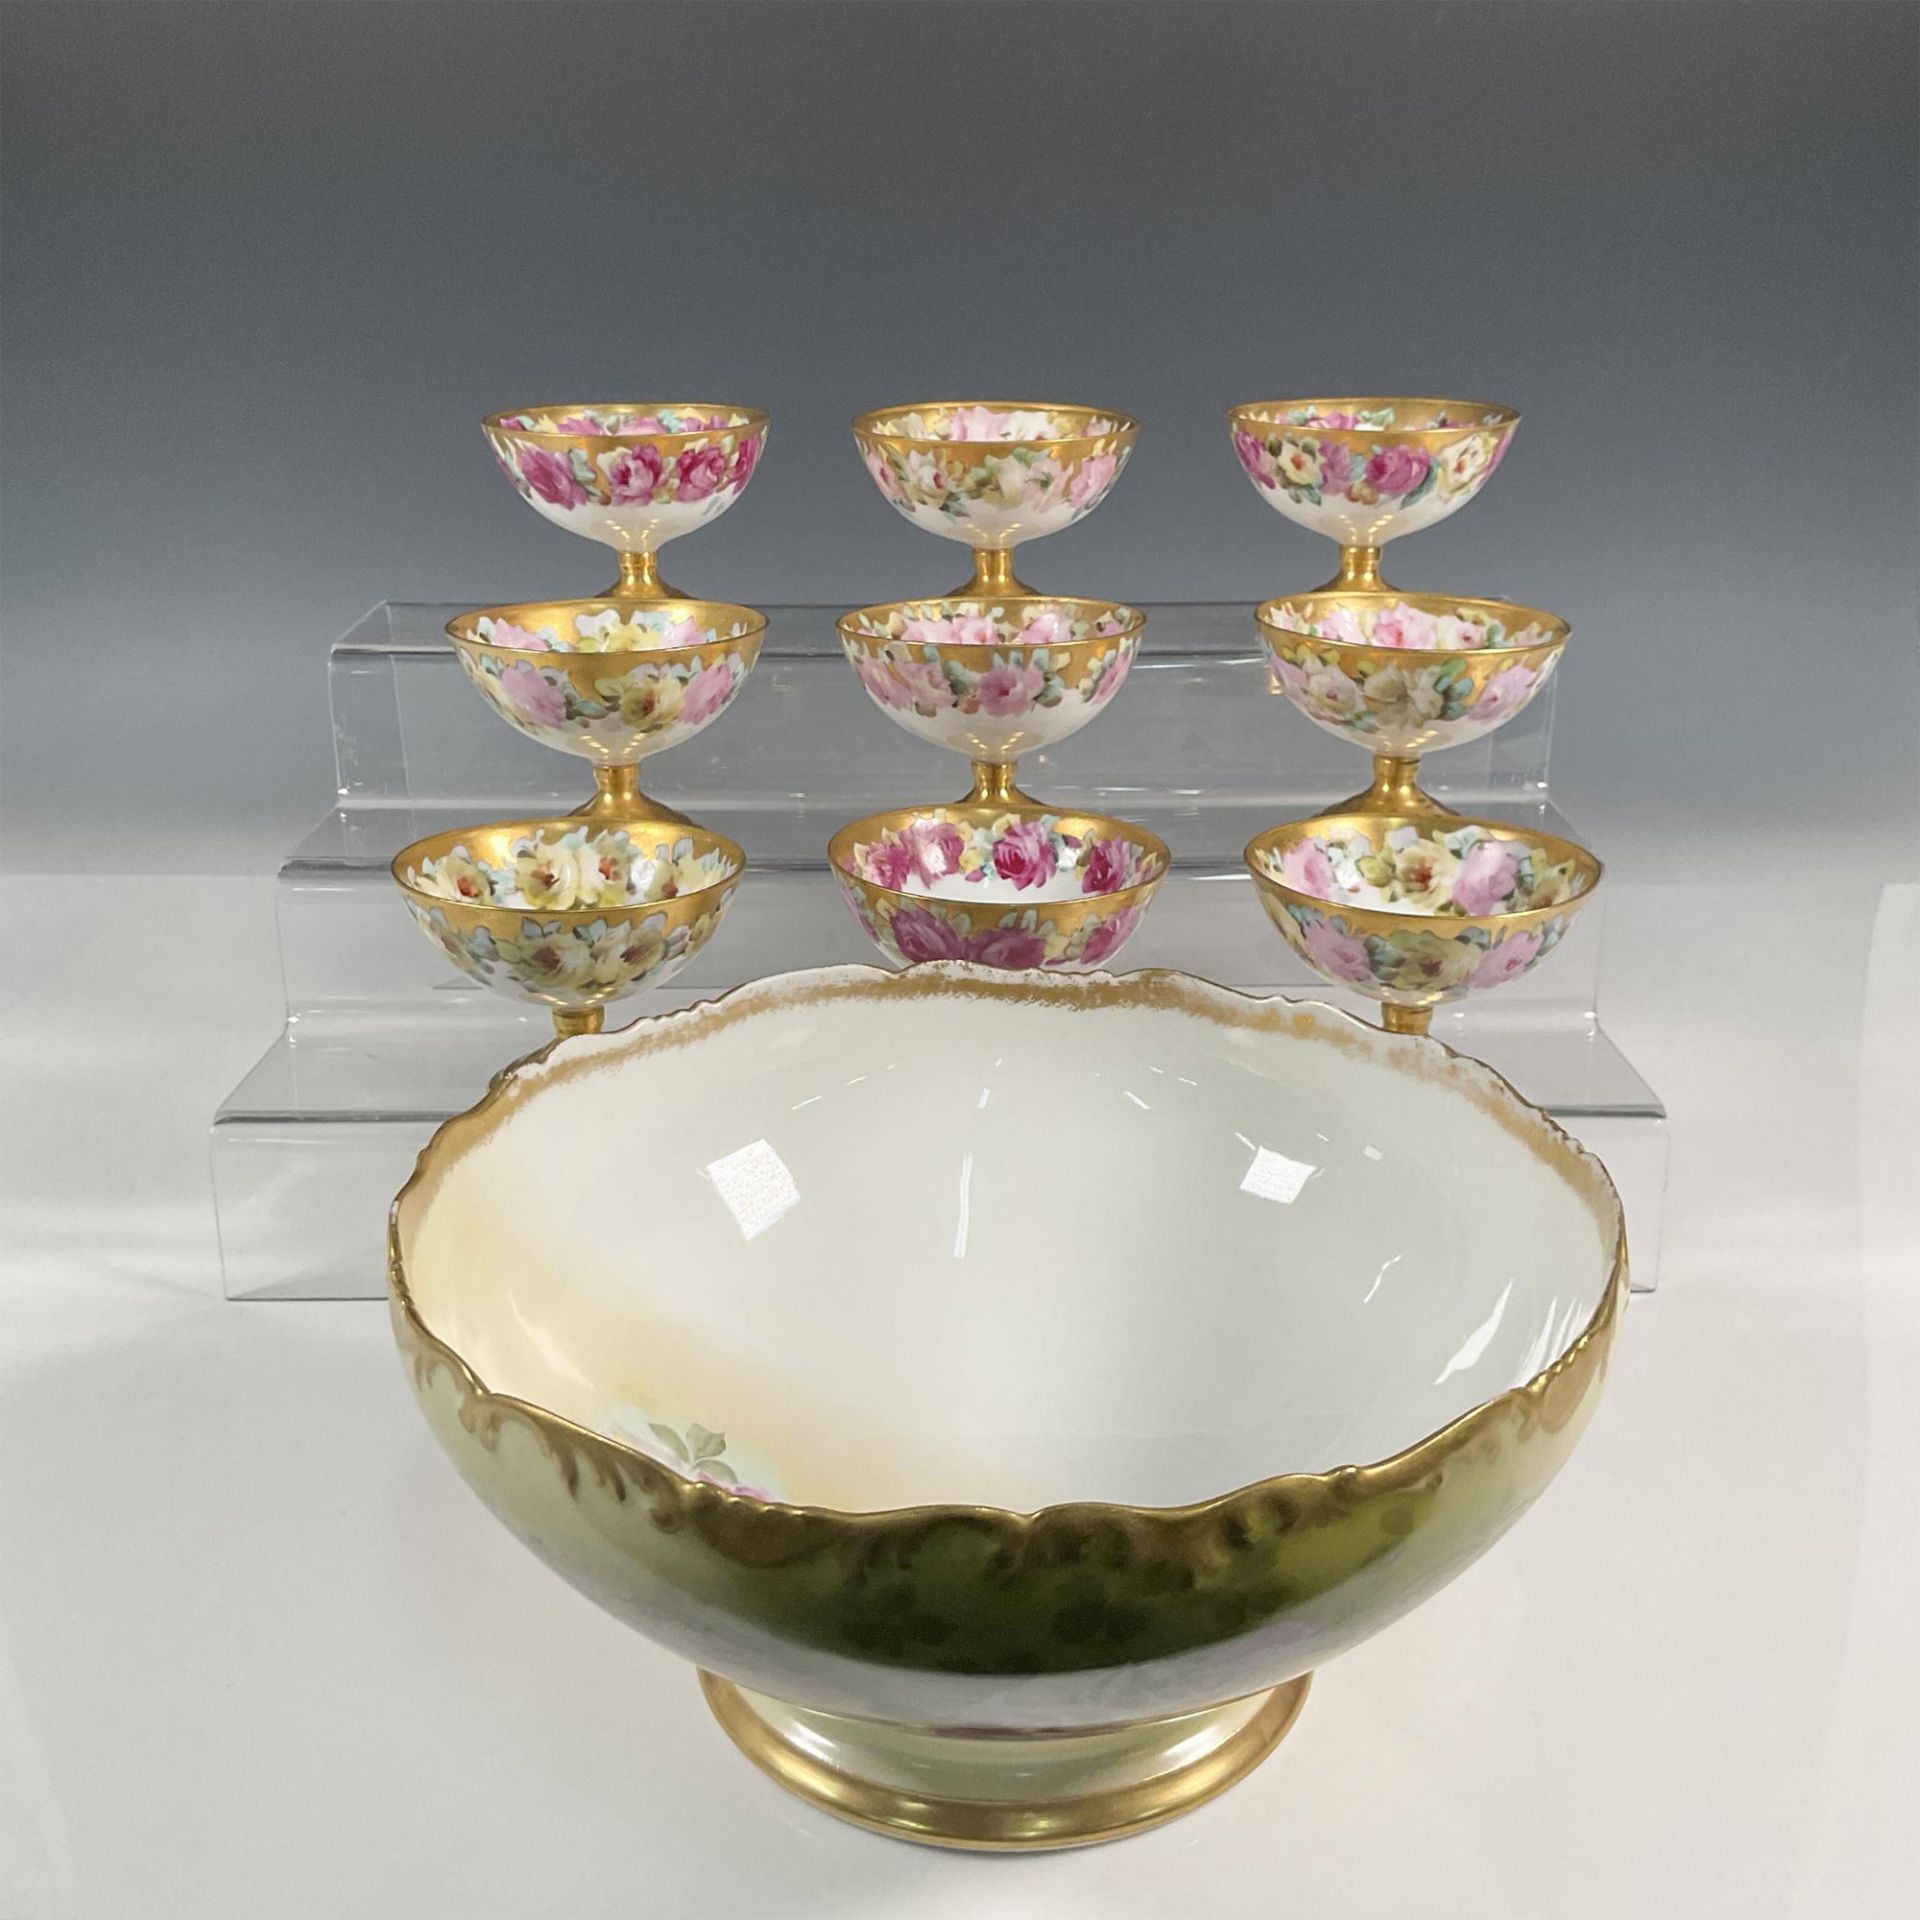 10pc T & V Limoges Porcelain Punch Bowl Set - Image 4 of 4